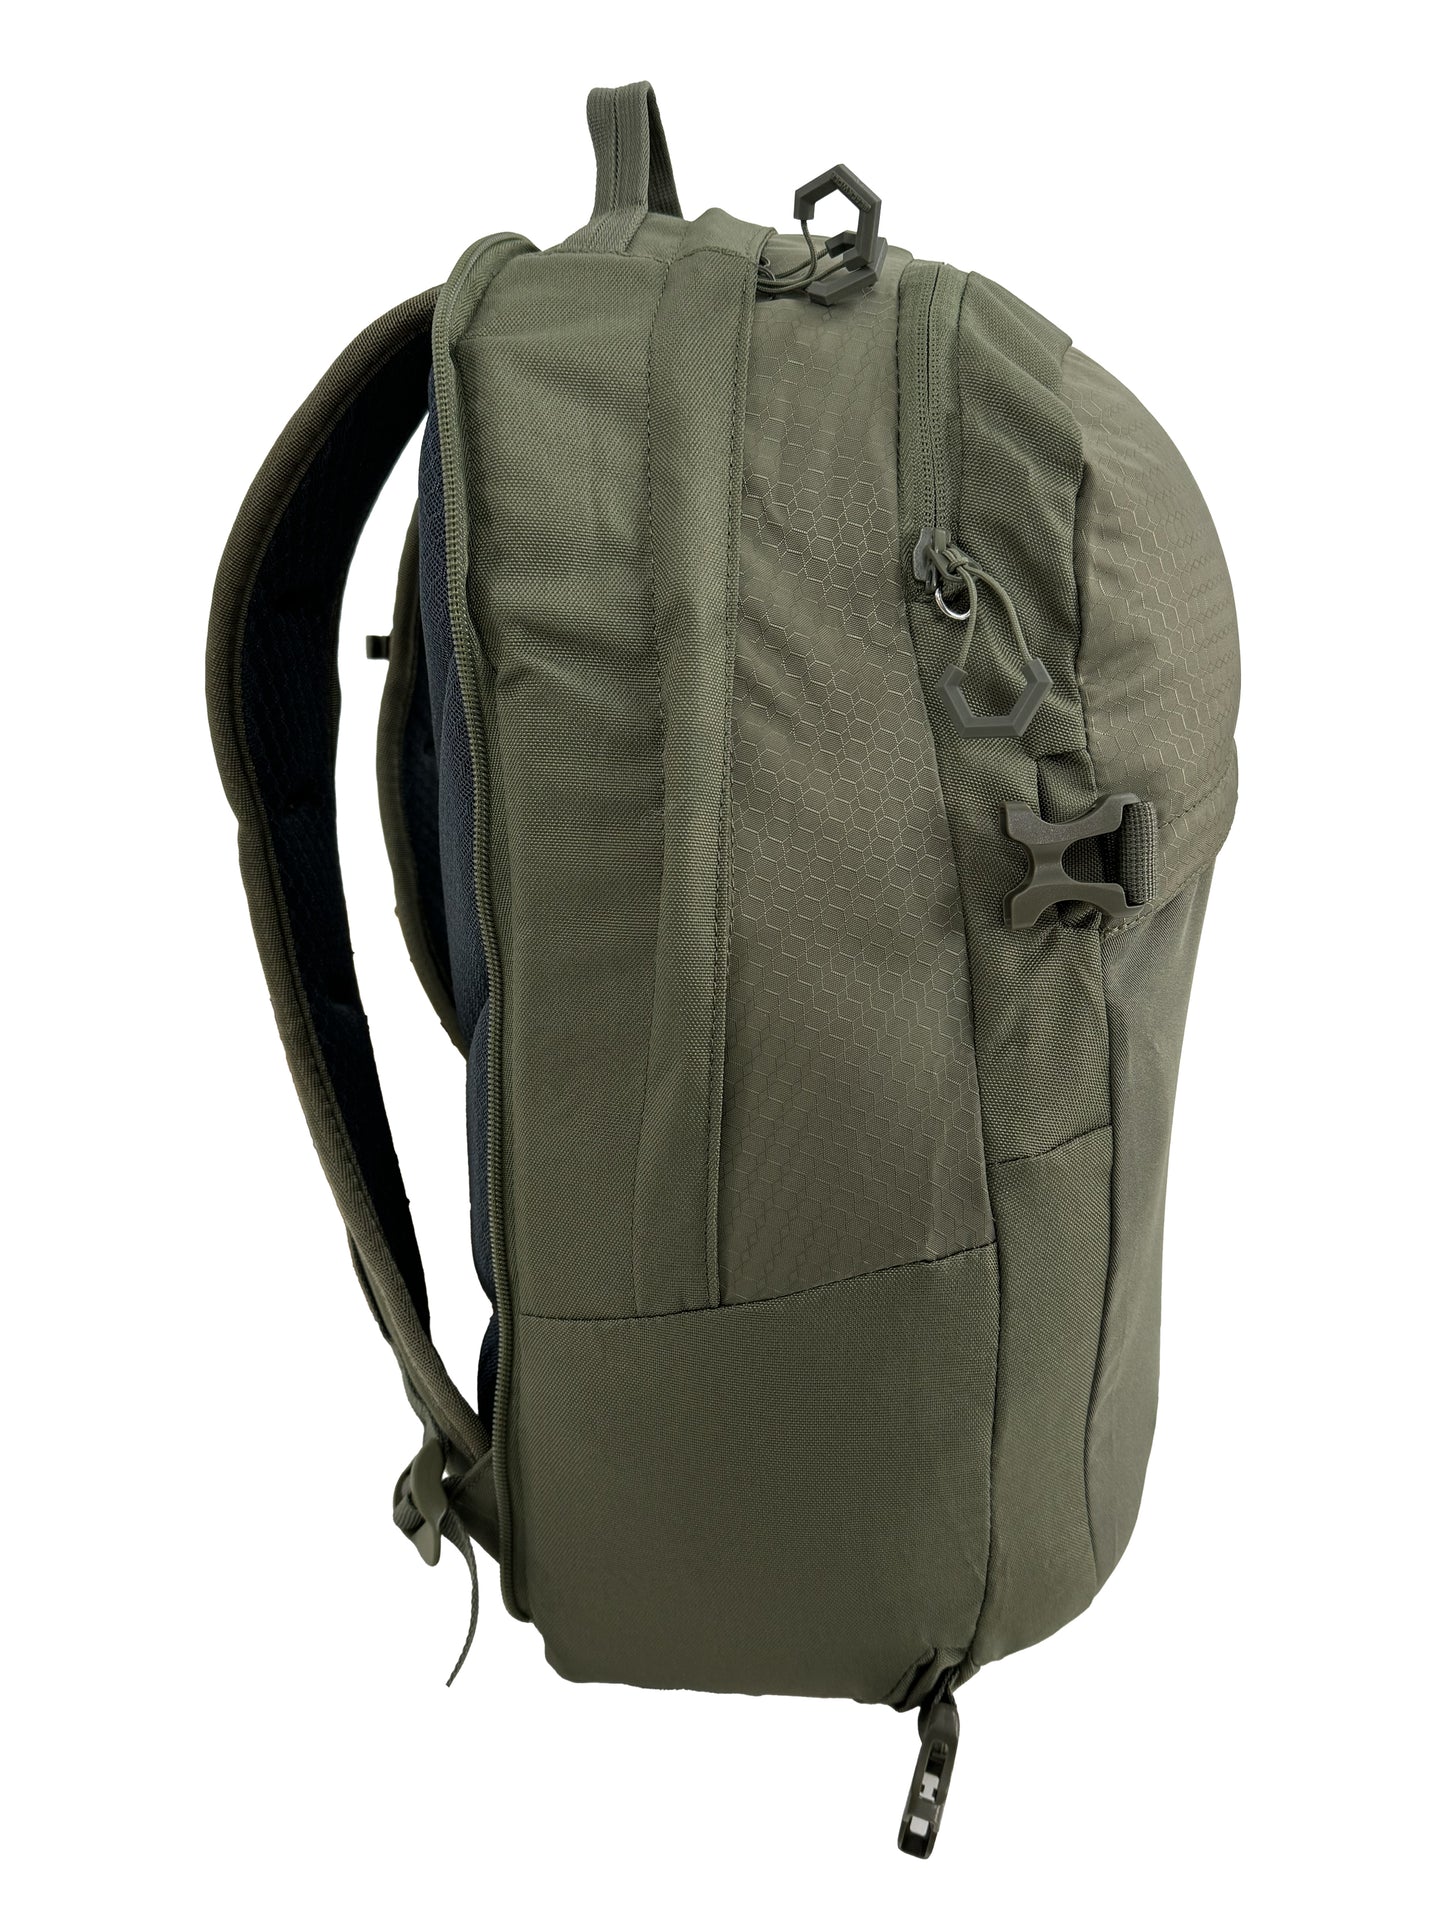 
                  
                    Grand Teton II 65 Travel Backpack
                  
                